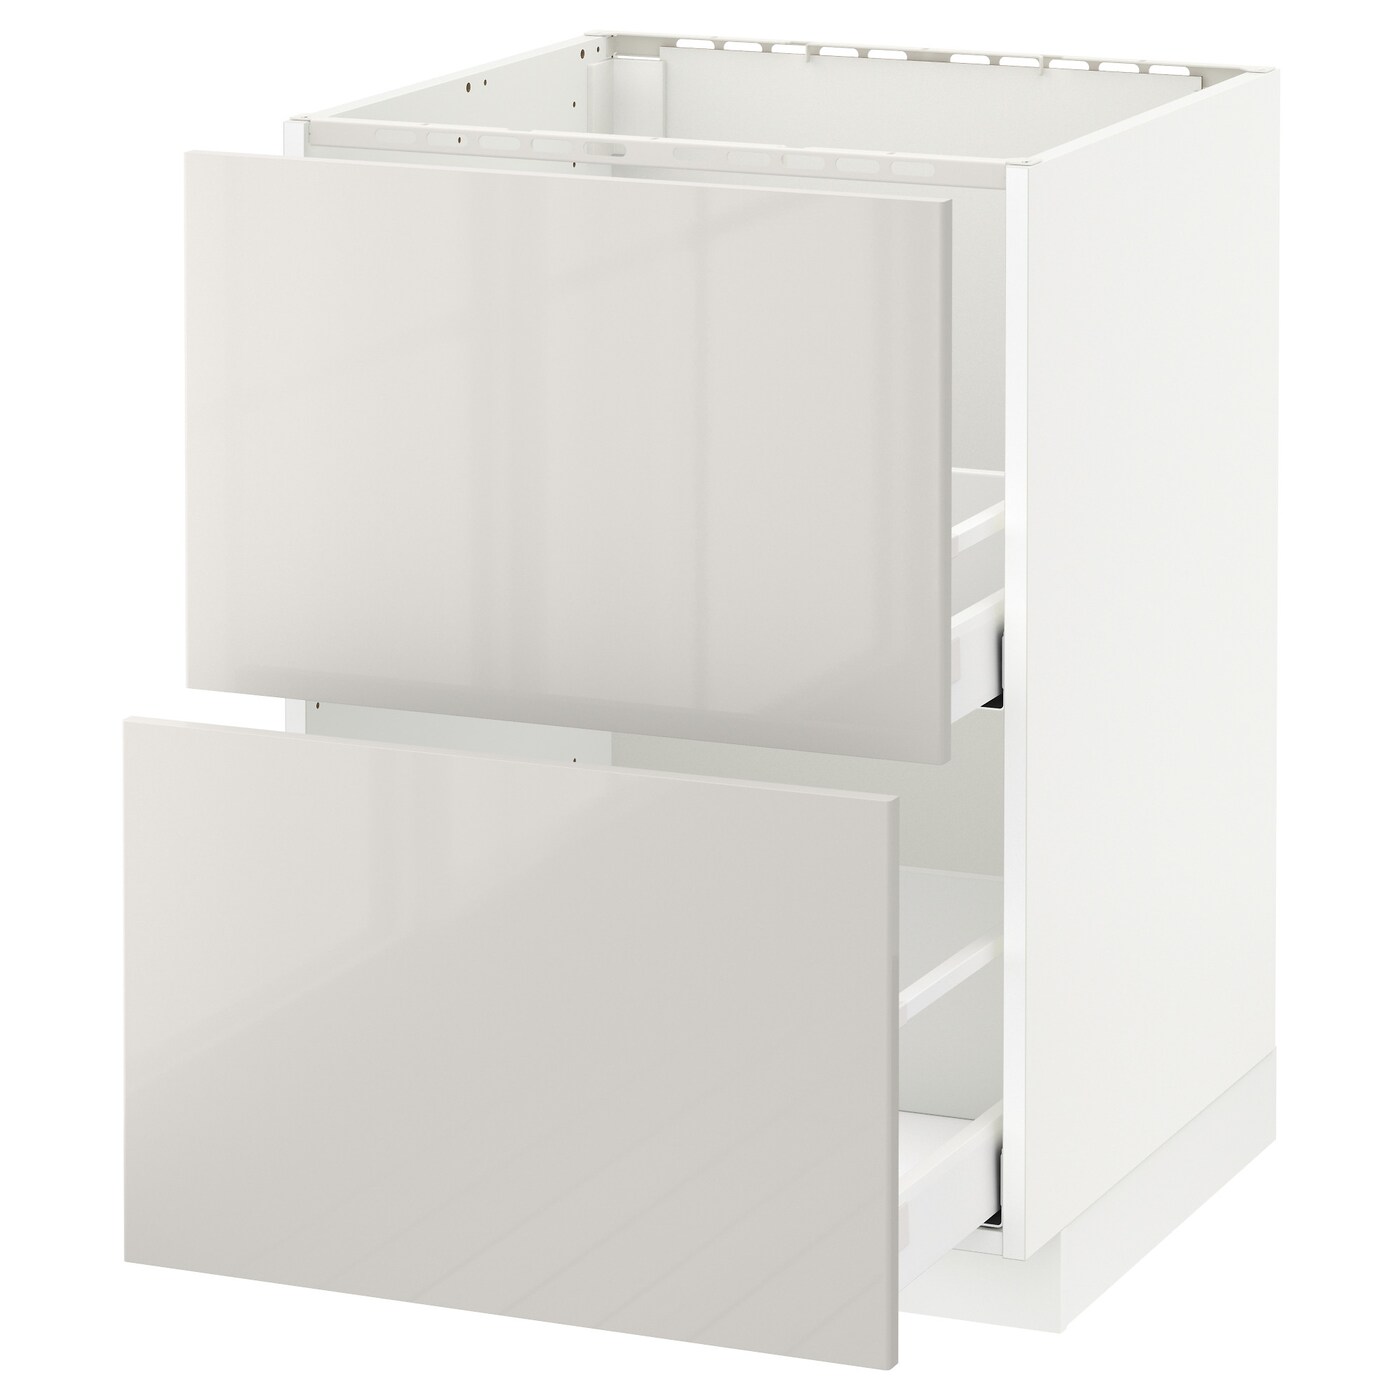 Напольный шкаф  - IKEA METOD MAXIMERA, 88x62x60см, белый/светло-серый, МЕТОД МАКСИМЕРА ИКЕА